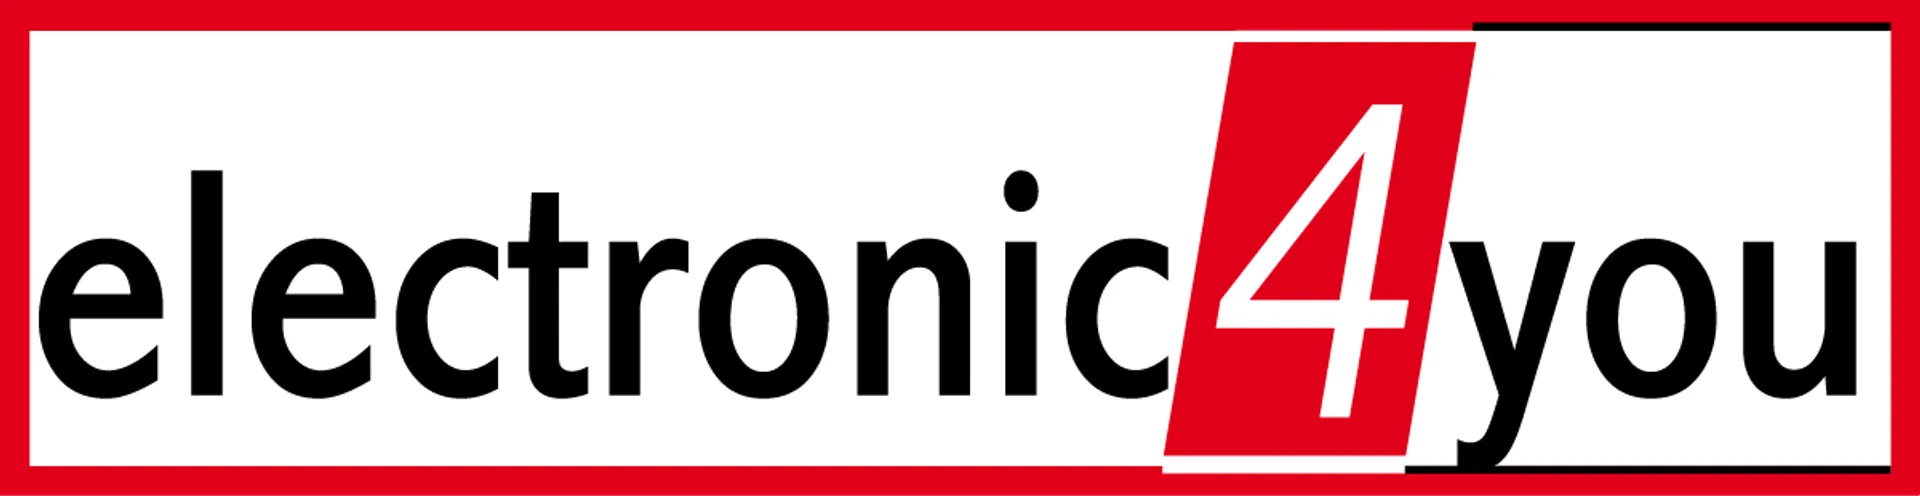 ELECTRONIC4YOU logo die aktuell Flugblatt